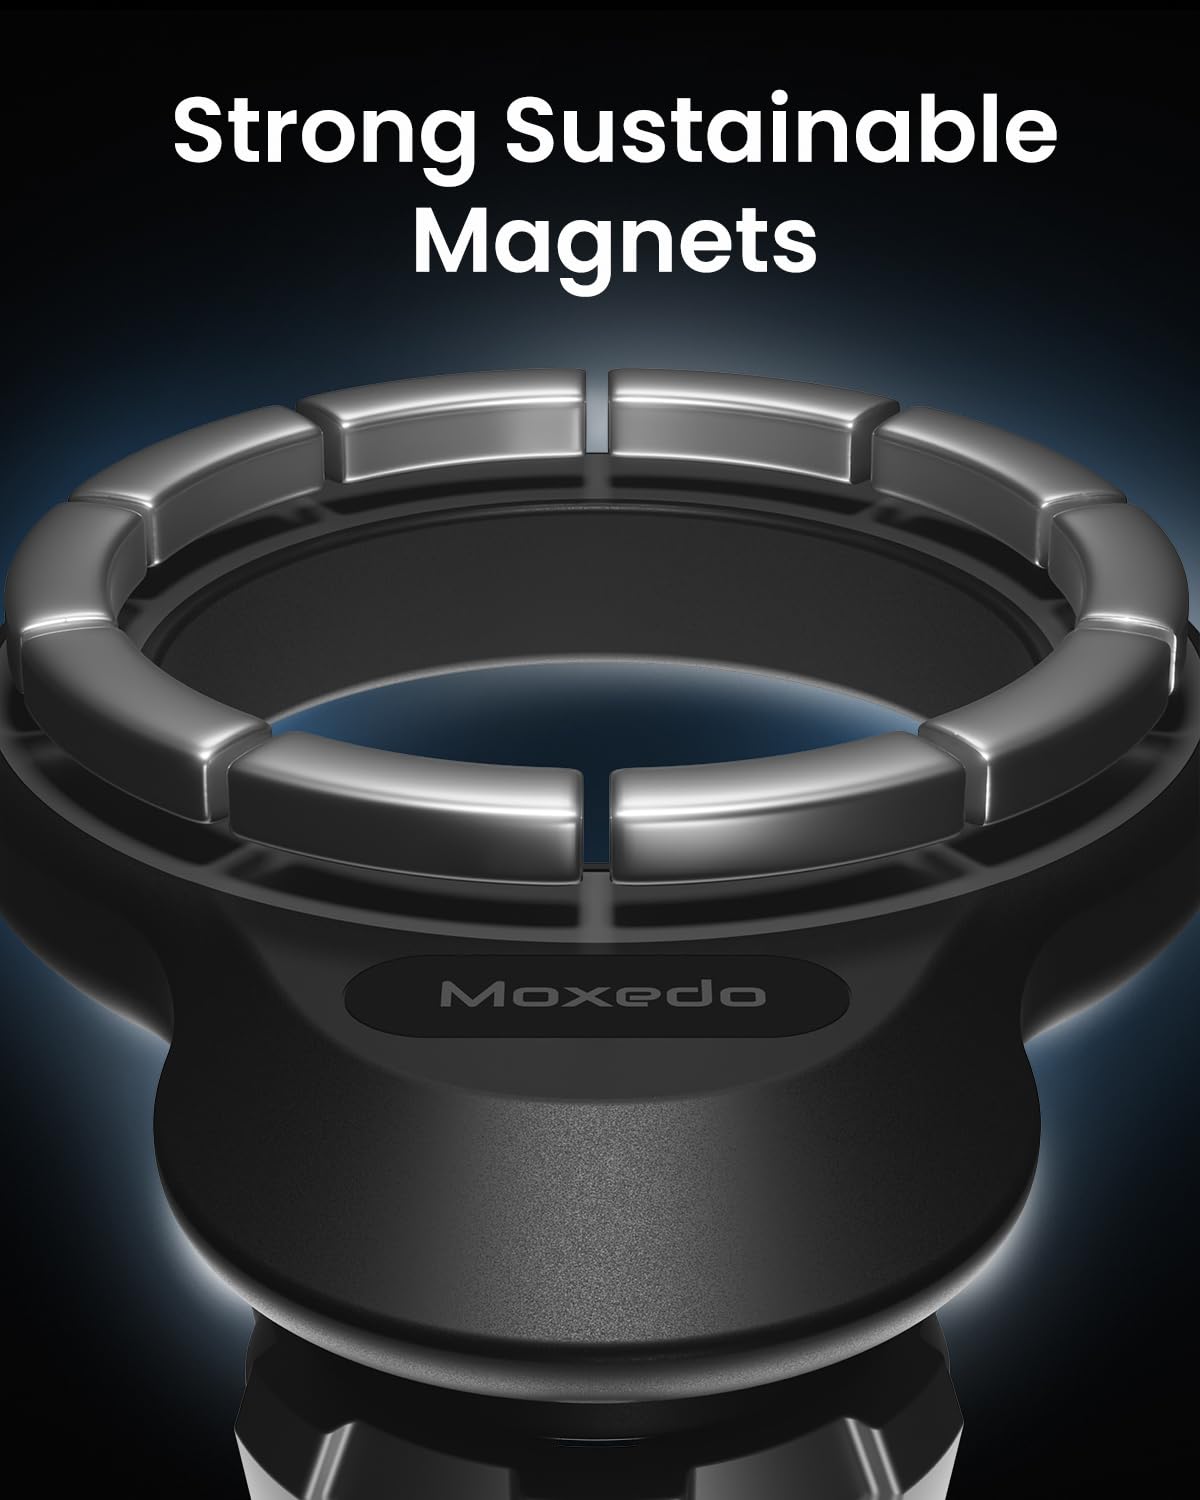 Moxedo Magnetic Car Mount Holder for Magnetic Safe Dashboard Desktop Bendable 360 Rotatable Adjustment